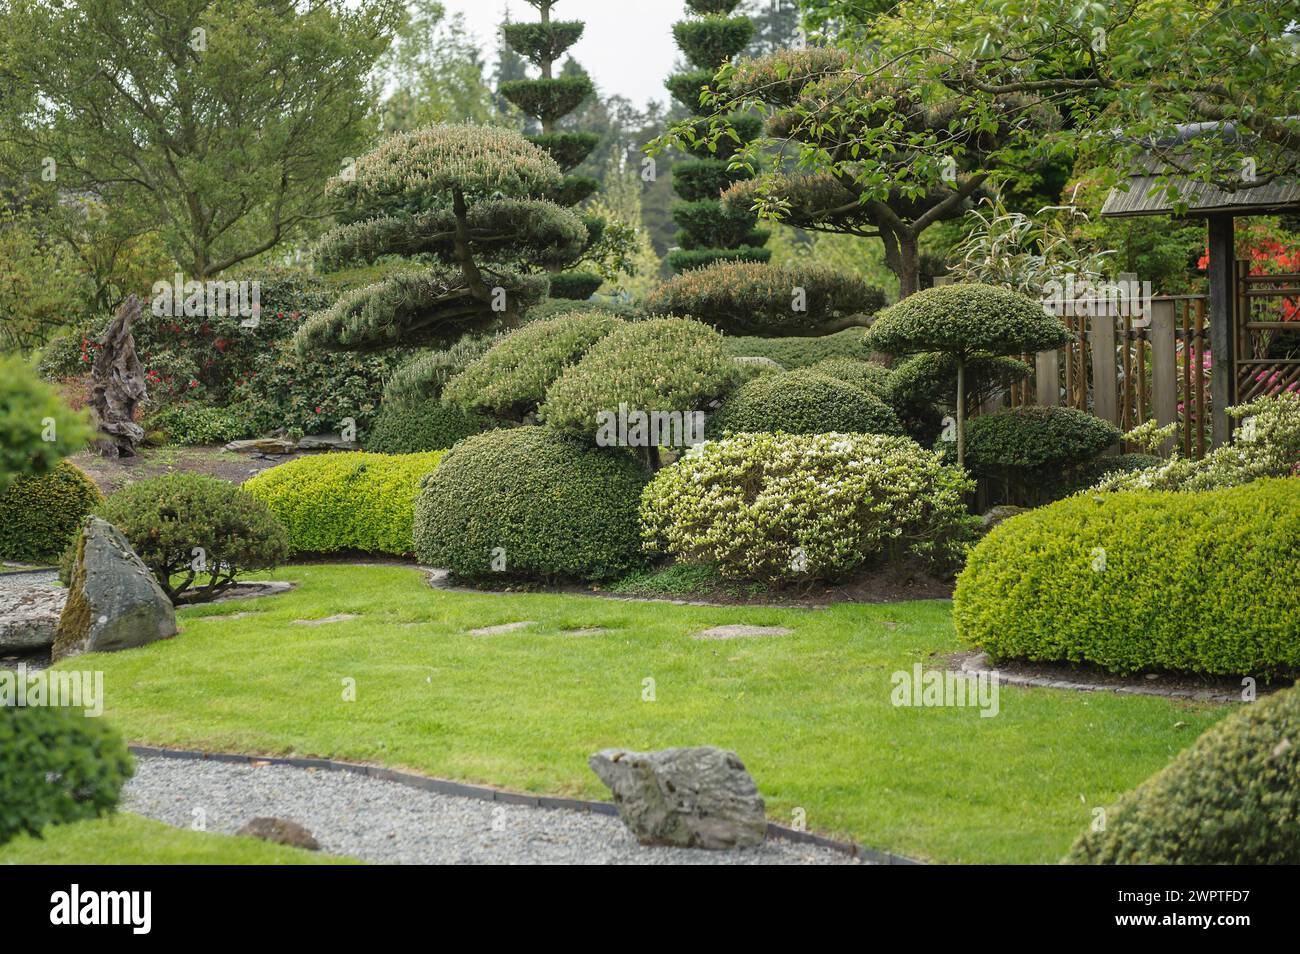 Japanese garden, krummholz pine (Pinus mugo), Park der Gaerten, Bad Zwischenahn, Lower Saxony, Germany Stock Photo